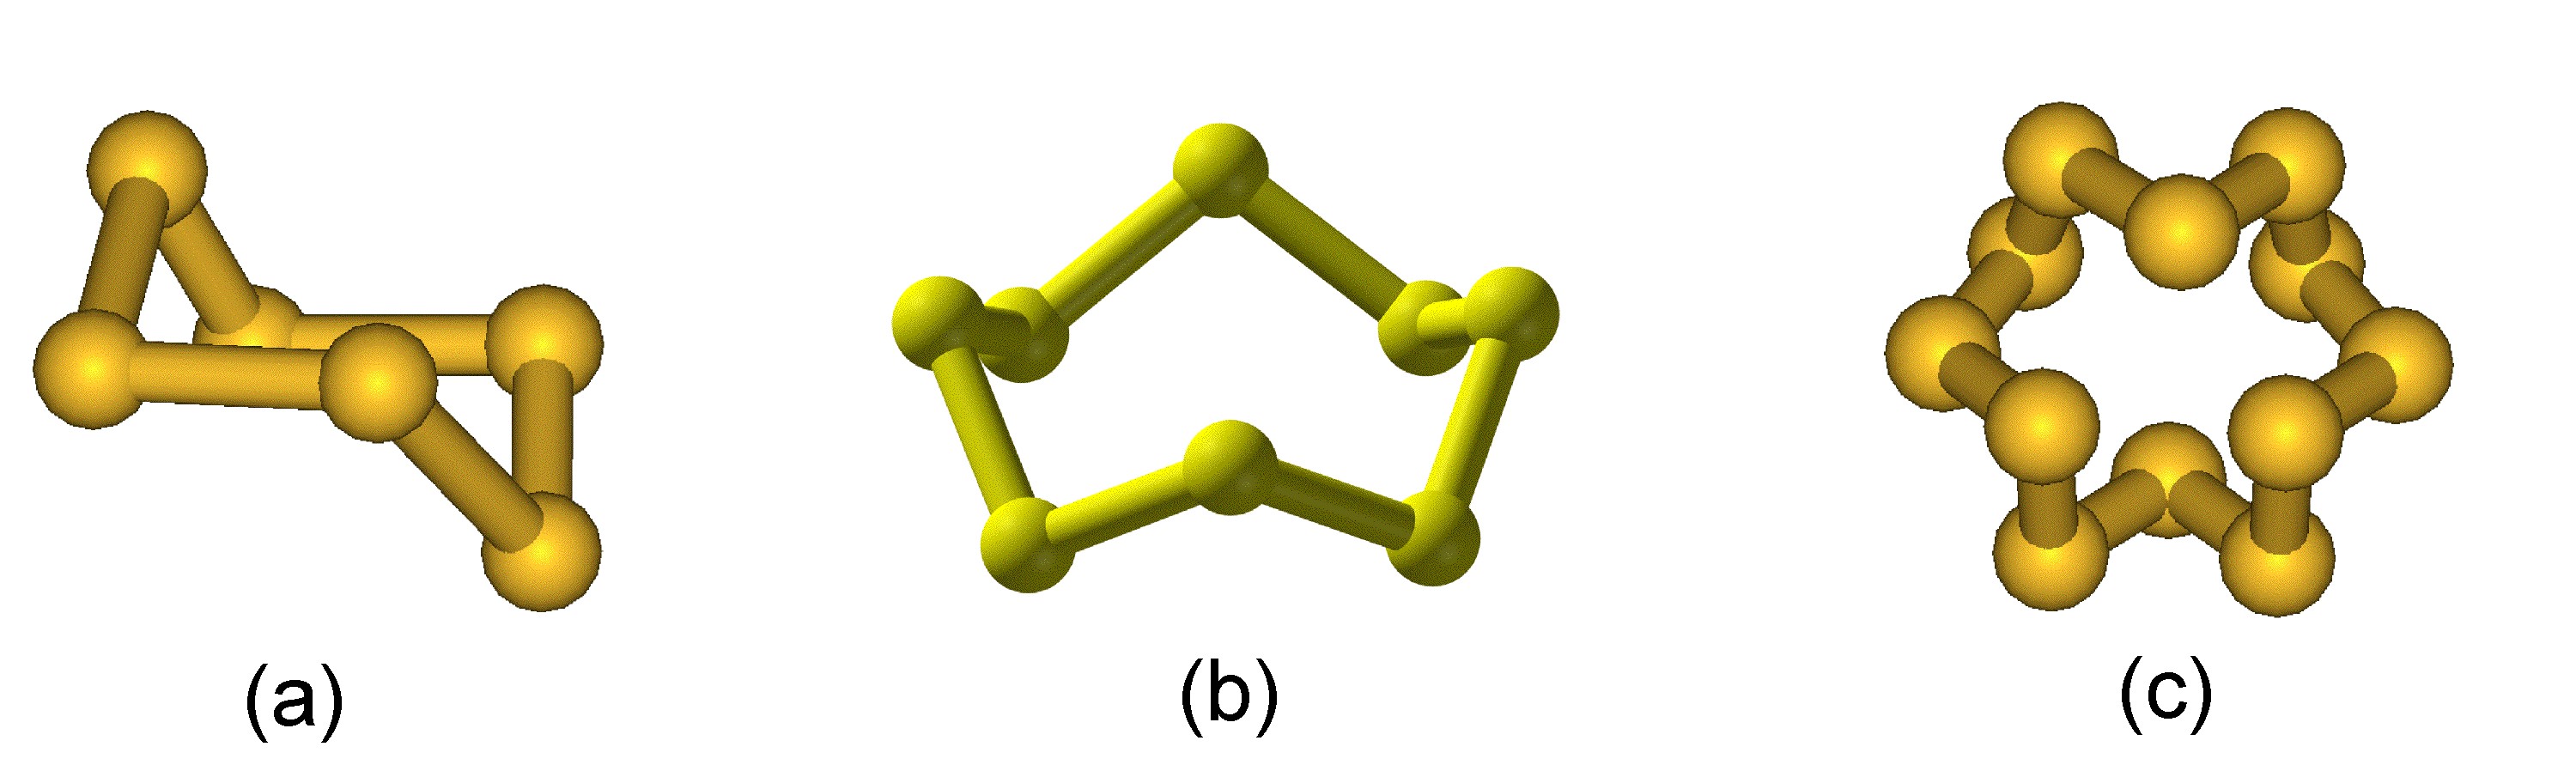 Пластическая сера формула. Ромбическая сера строение молекулы. Ромбическая сера структура. Ромбическая сера кристаллическая решетка. Пластическая сера кристаллическая решетка.